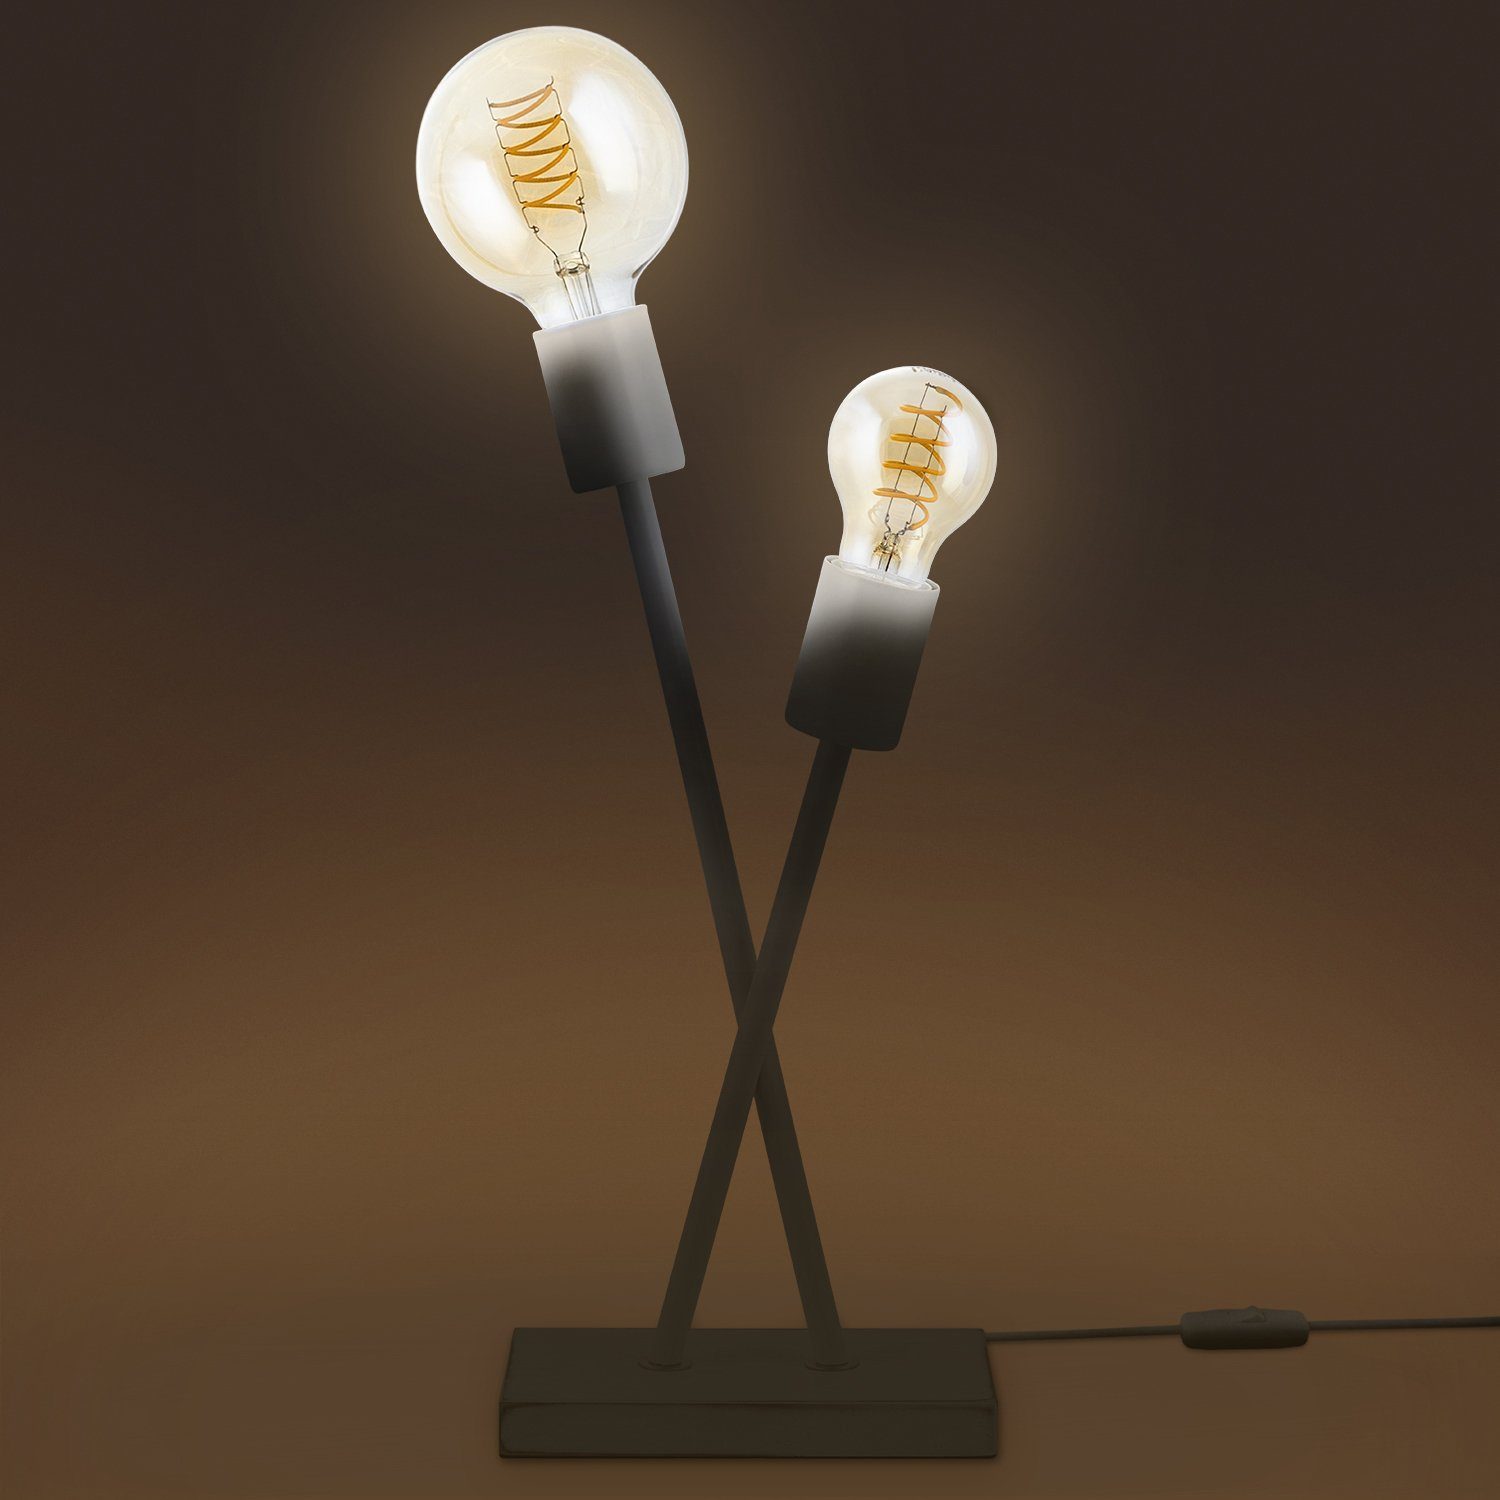 IKS, Wohnzimmer ohne Design Stehlampe Retro Tischleuchte Paco Lampe Vintage Leuchtmittel, Home Industrial E27 LED